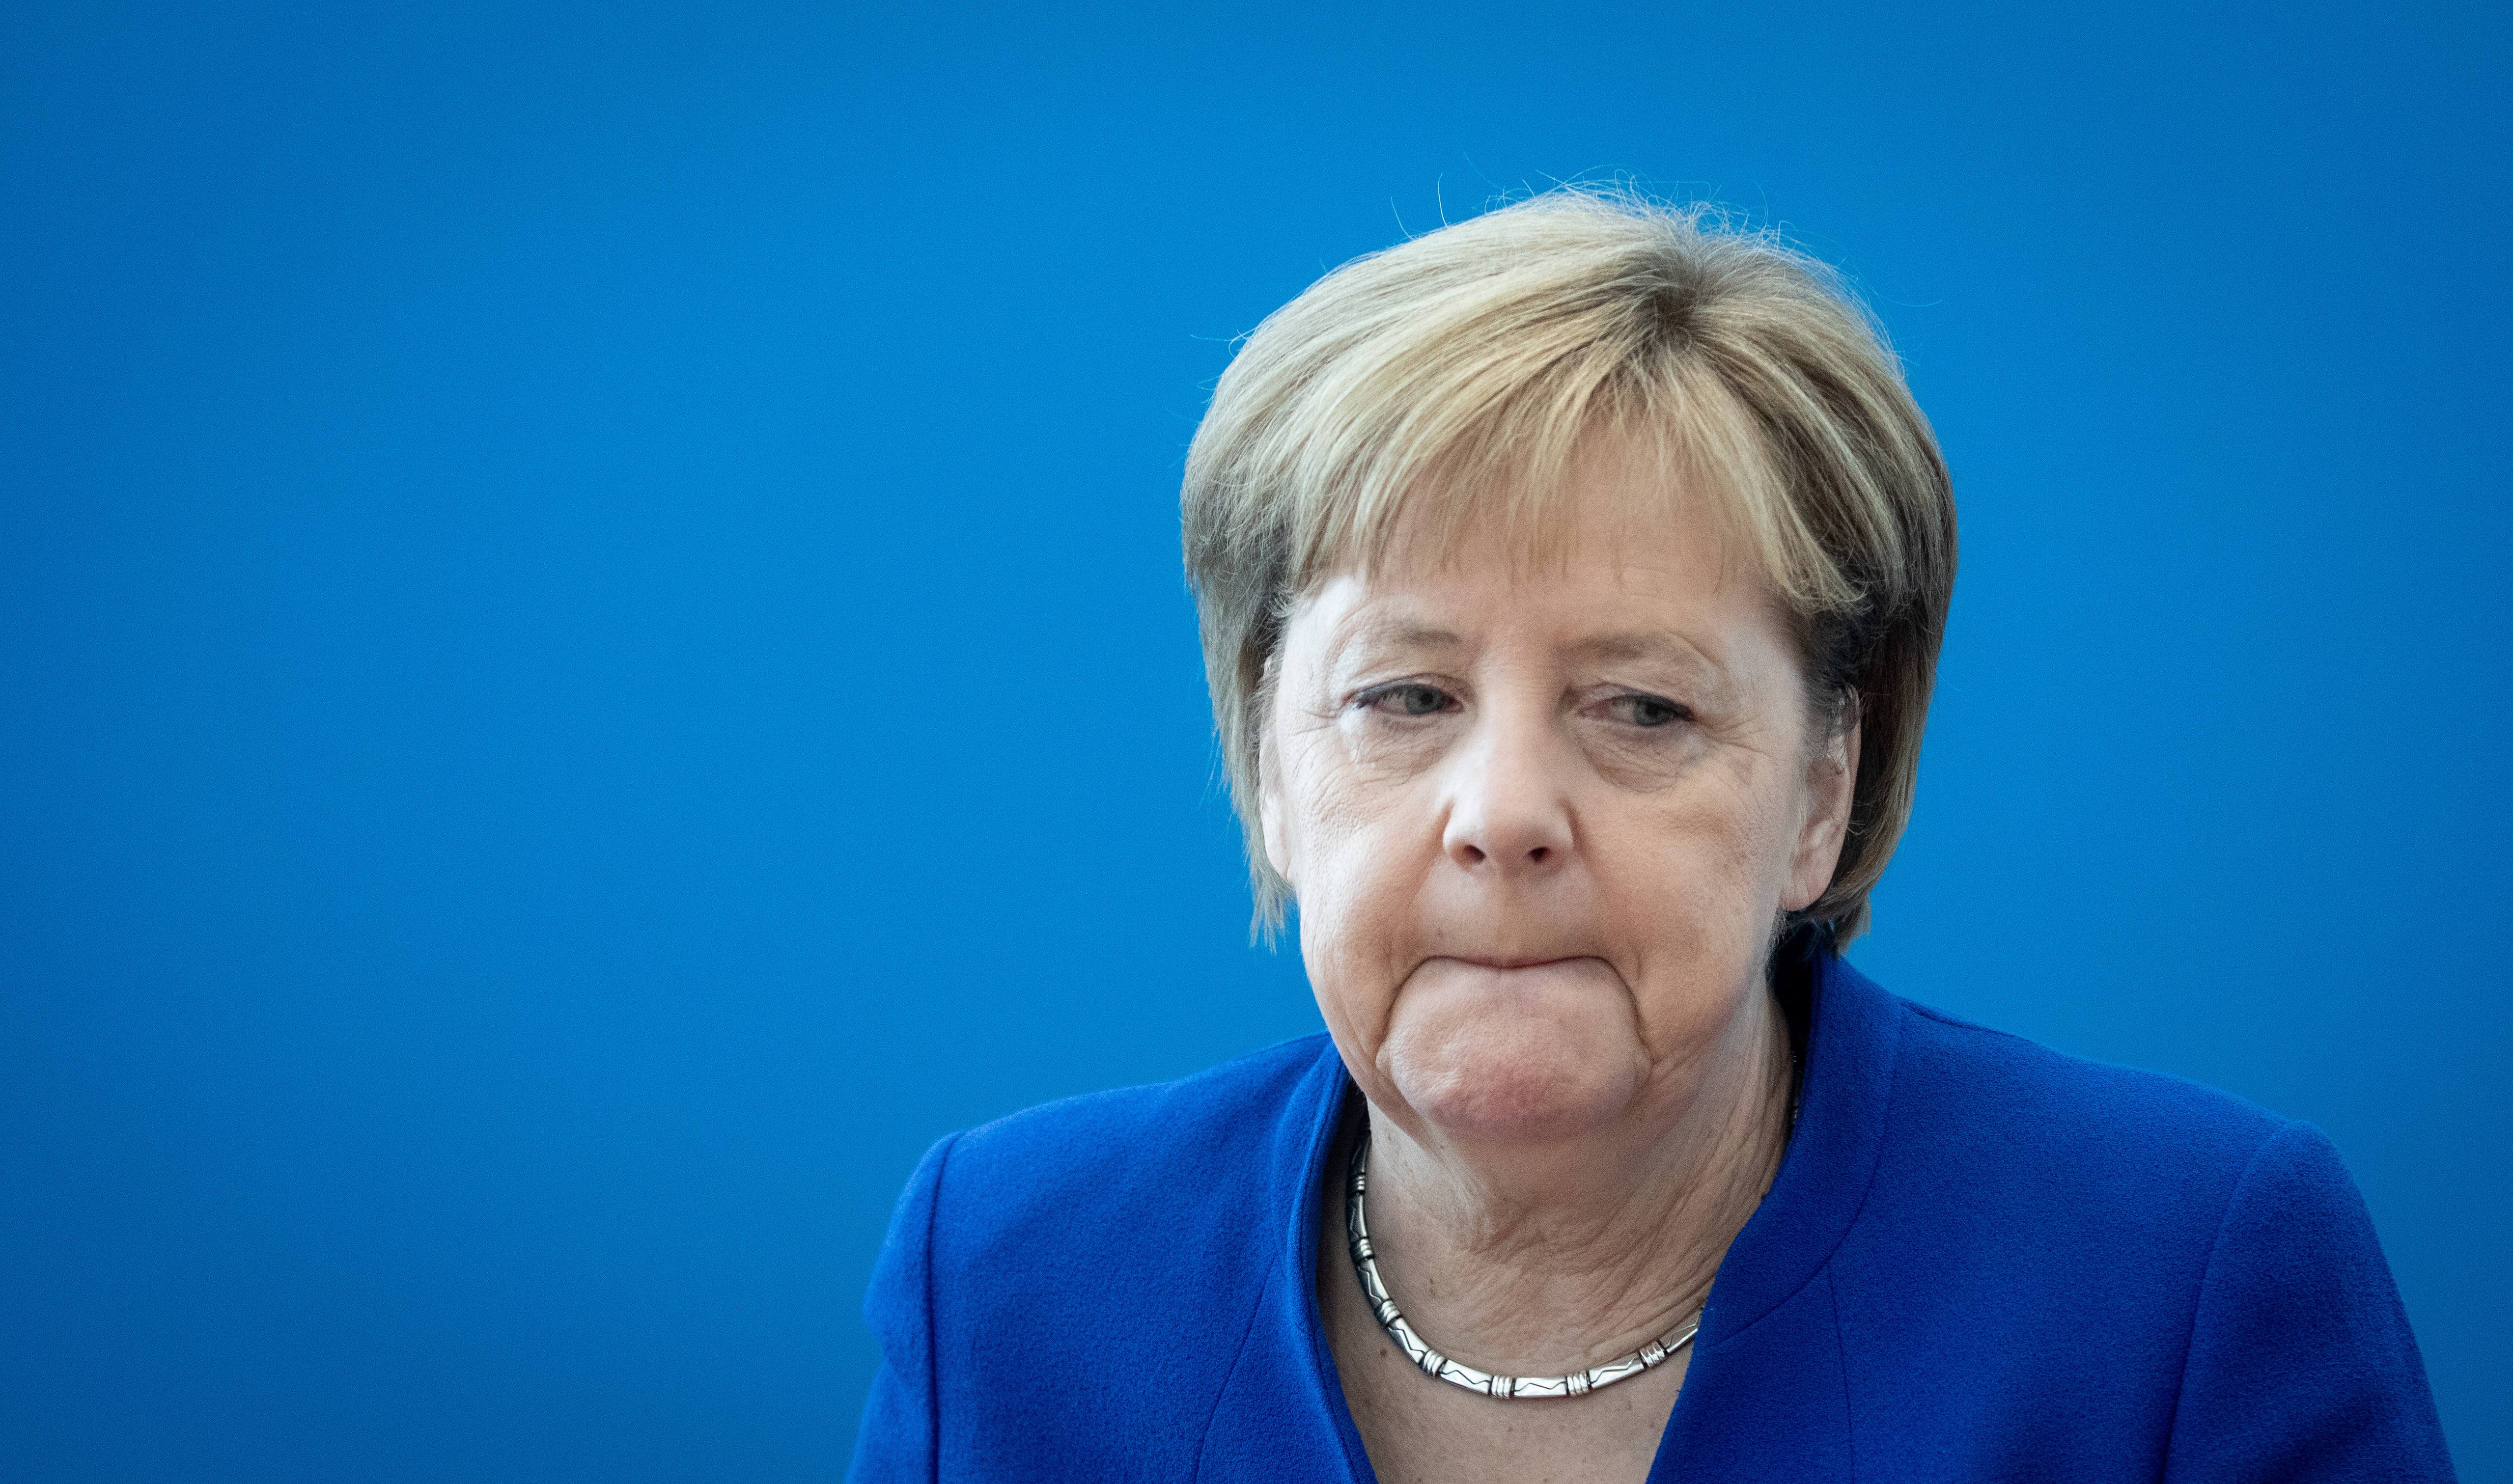 Rekordalacsony Merkelék támogatottsága, jönnek fel a populisták